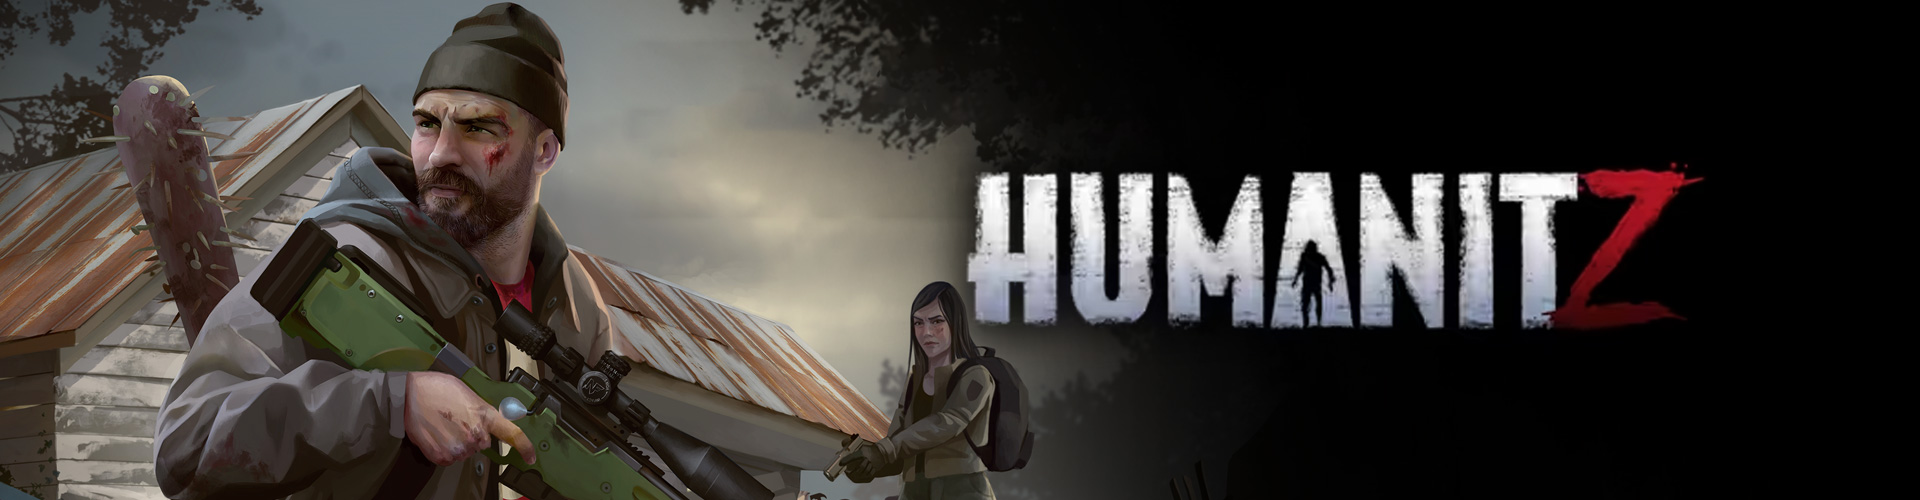 HumanitZ est un survival horror contre des zombies